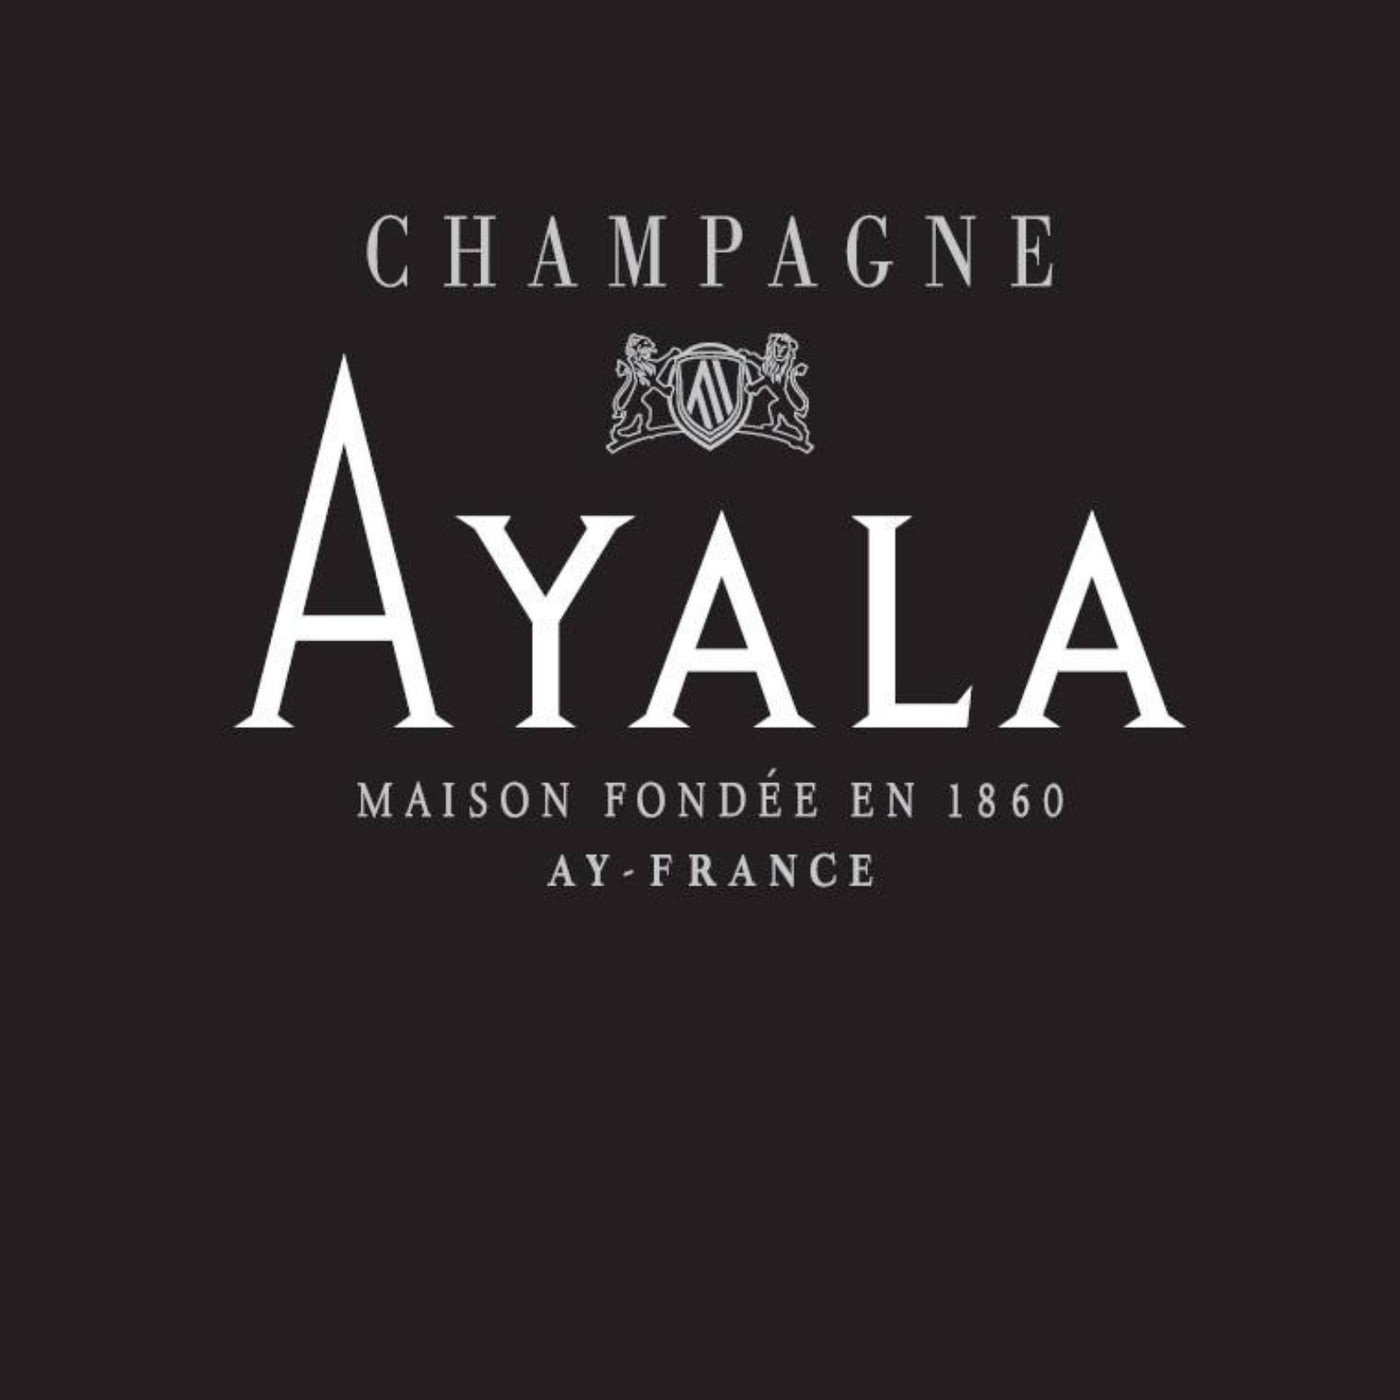 Ayala Champagne: puur en elegant. Verkrijgbaar bij Flesjewijn.com